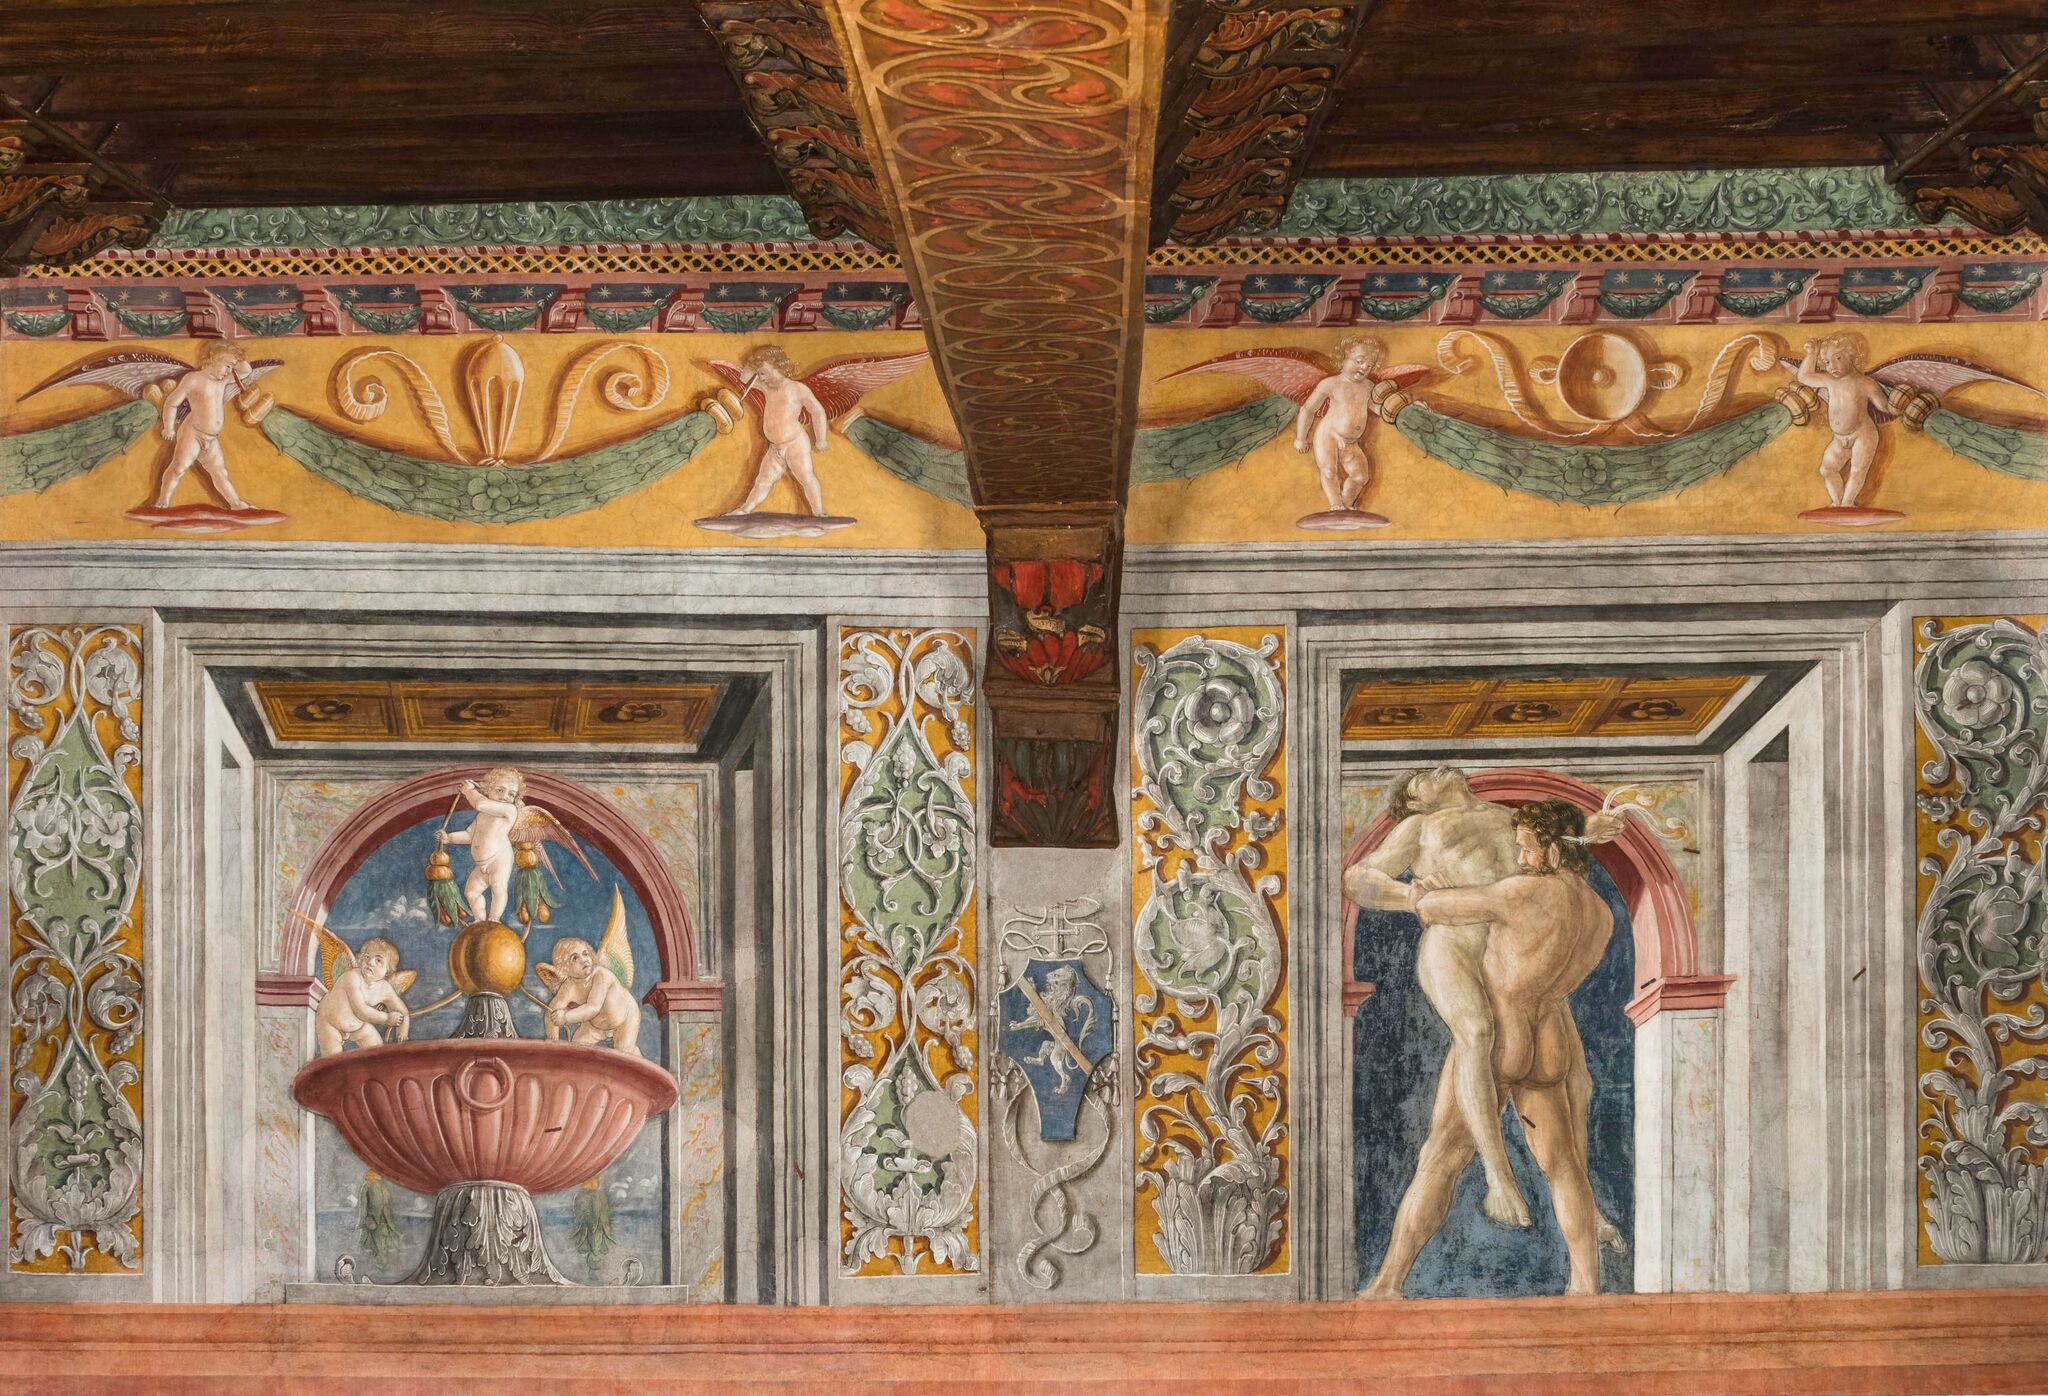 Restaurata la sala di ercole a palazzo venezia artribune for Fregi decorativi